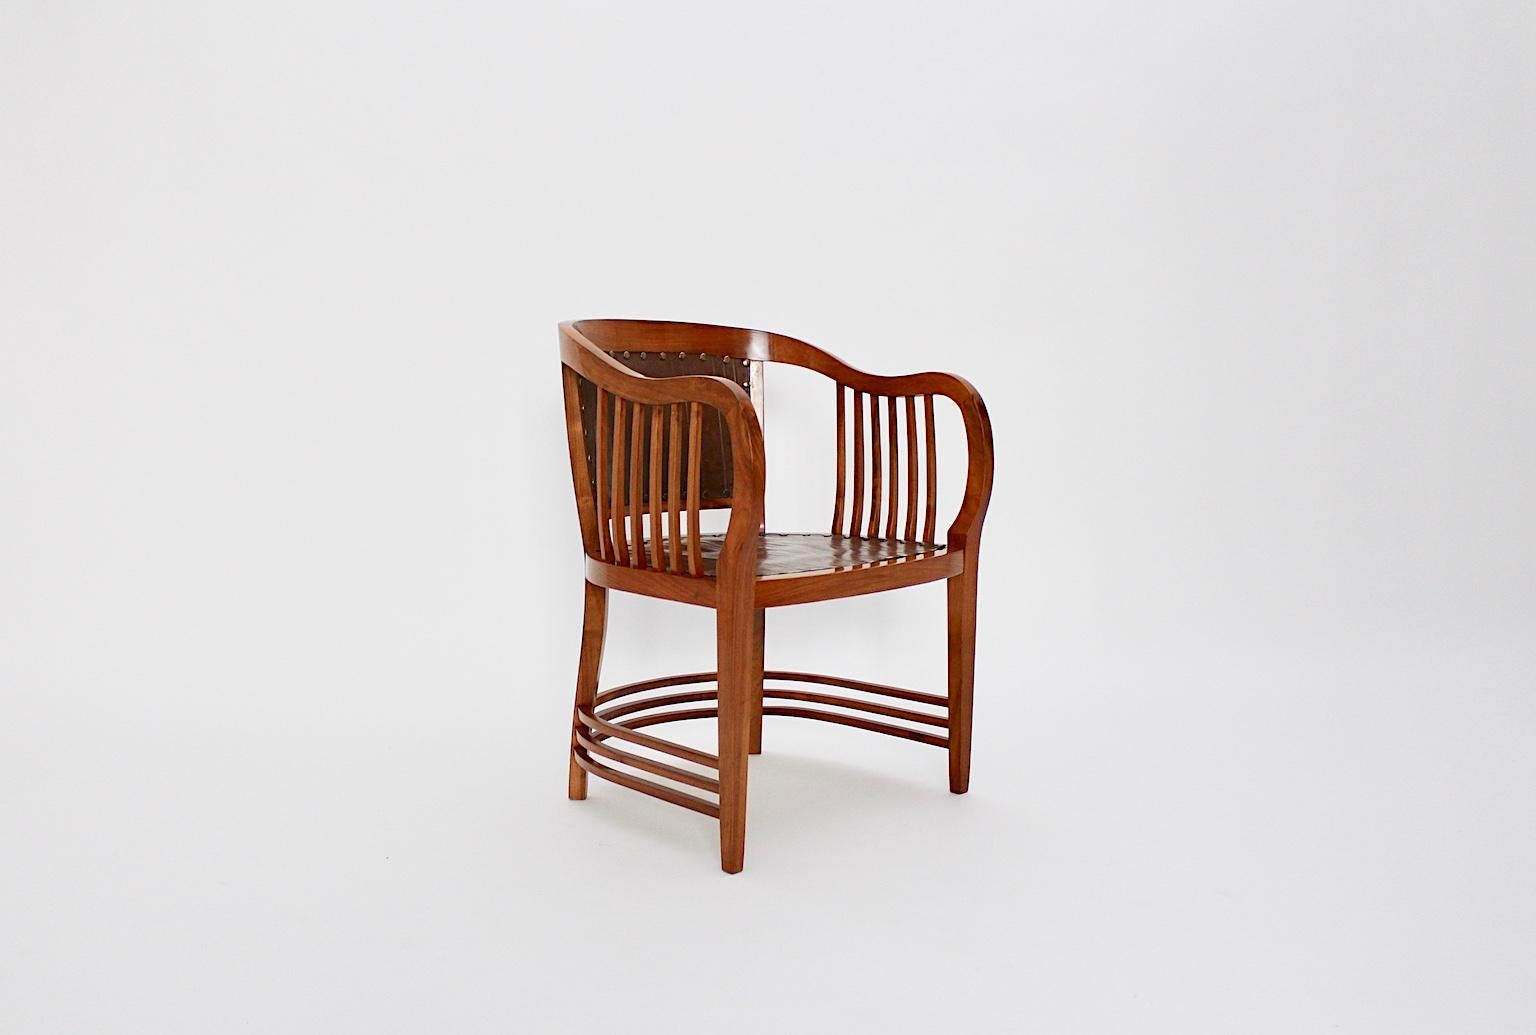 Ein bedeutender Jugendstil-Sessel aus Nussbaumholz, der von Josef Maria Olbrich 1898-1899 entworfen und von Michael Niedermoser, Wien, ausgeführt wurde.
Der schöne Sessel wurde aus massivem Nussbaumholz gefertigt, das professionell mit Schellack